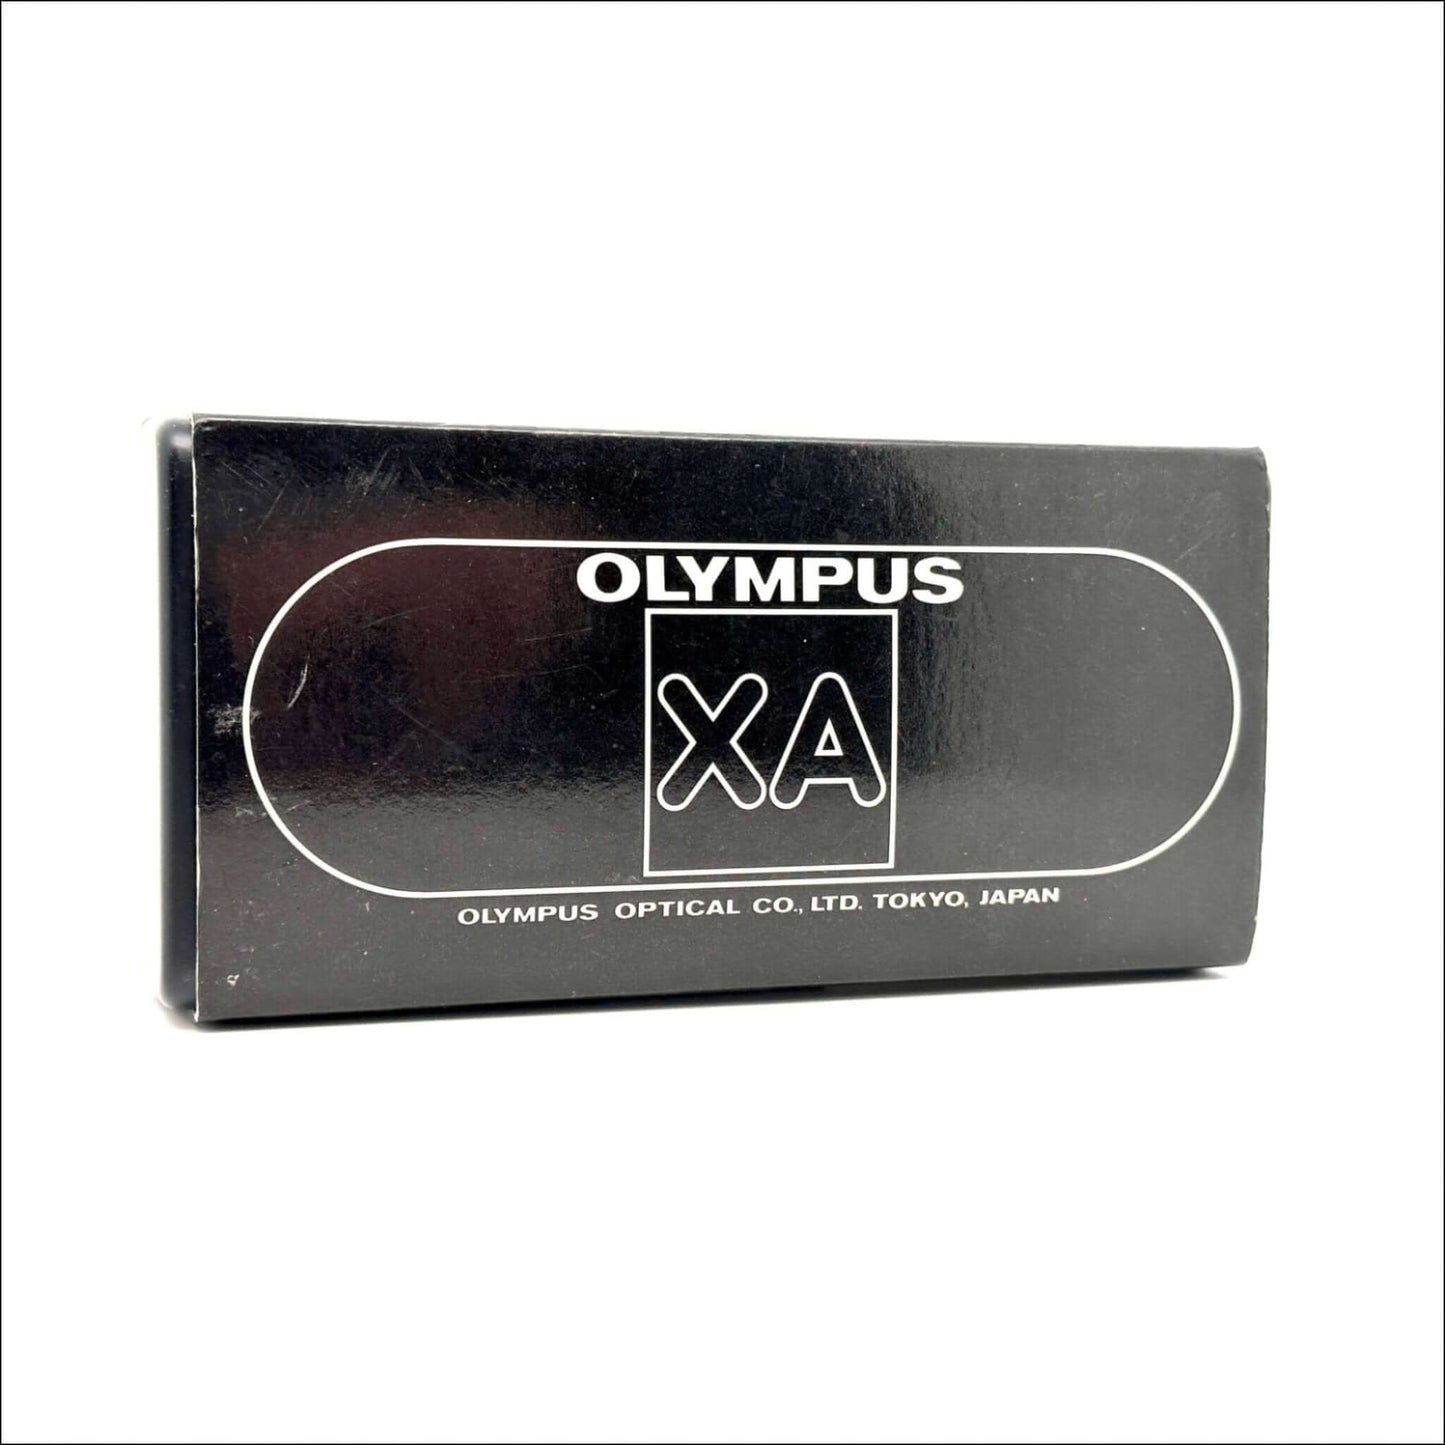 Olympus Xa Used 35mm Used Film Camera #3267402